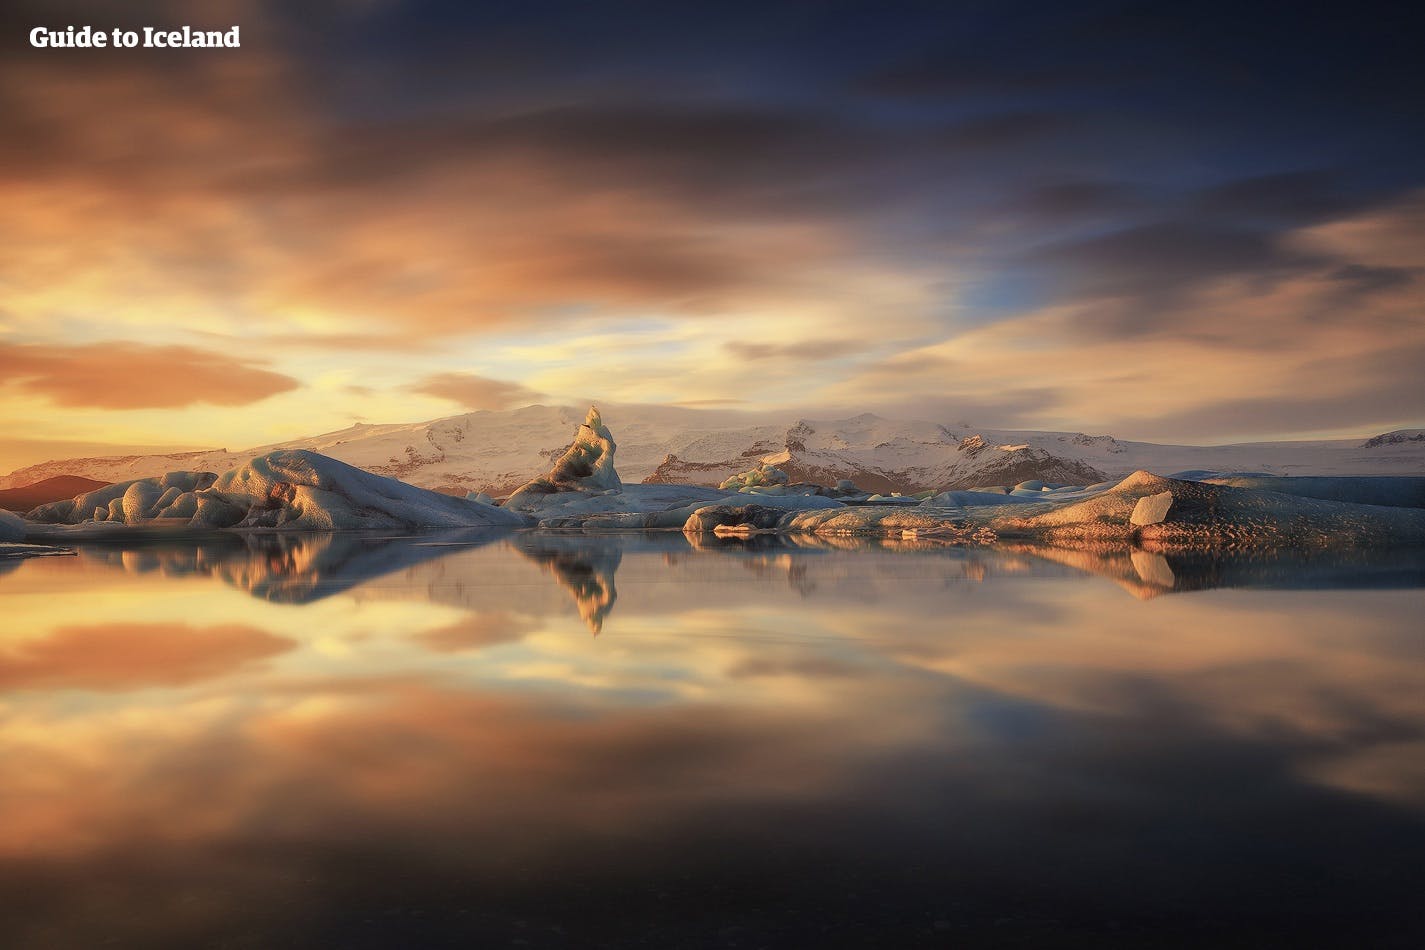 ヨークルスアゥルロゥン氷河湖はアイスランドの最も有名な絶景スポットです